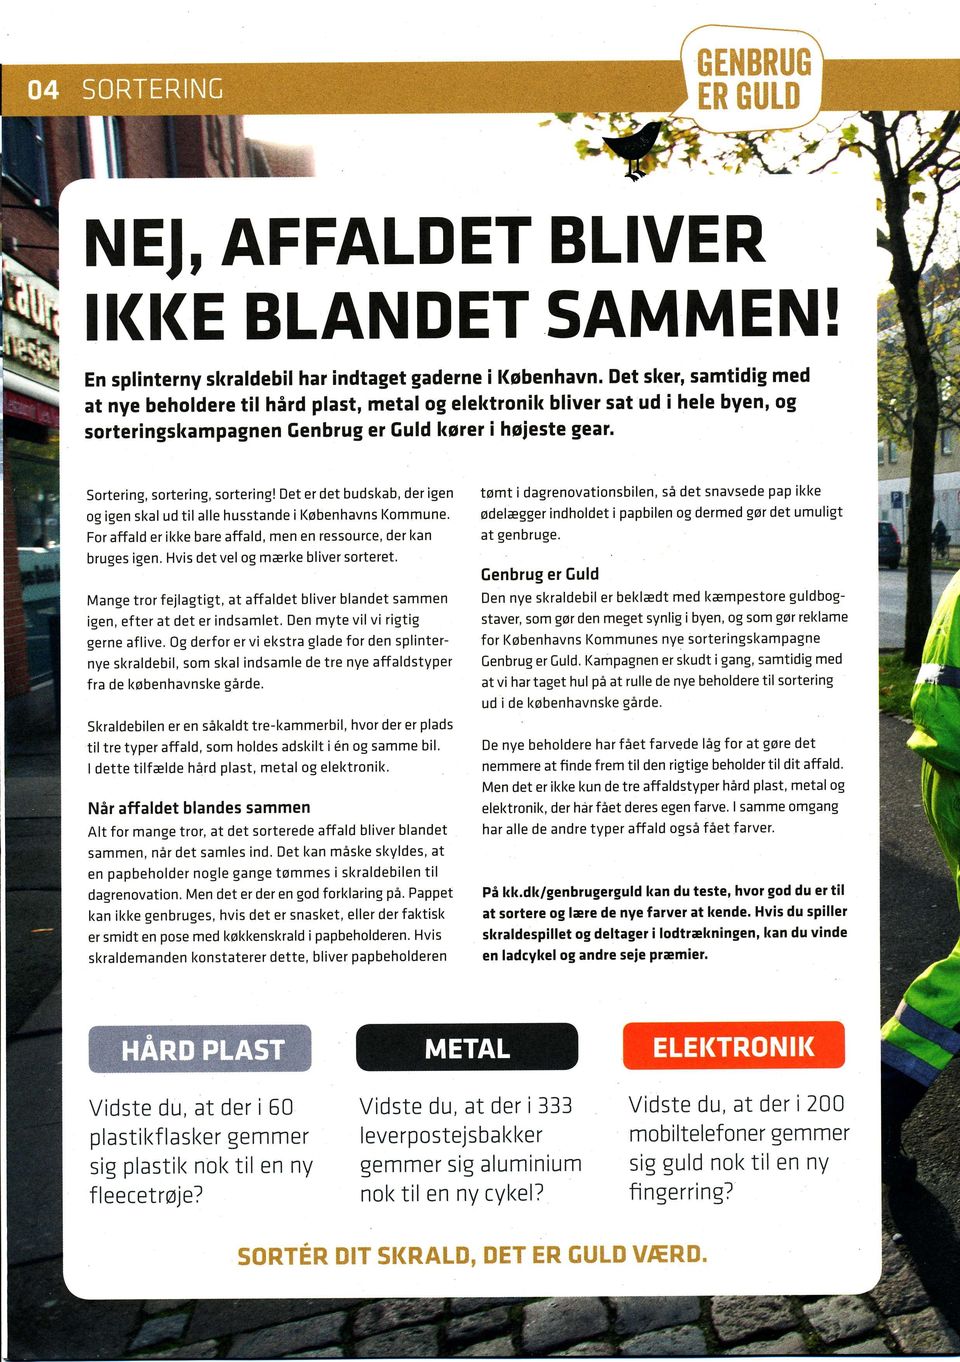 4Y Sortering, sortering, sortering! Det er det budskab, der igen og igen skal ud til alle husstande i Københavns l(ommune' For affald er ikke bare affald, men en ressource, der kan bruges igen.